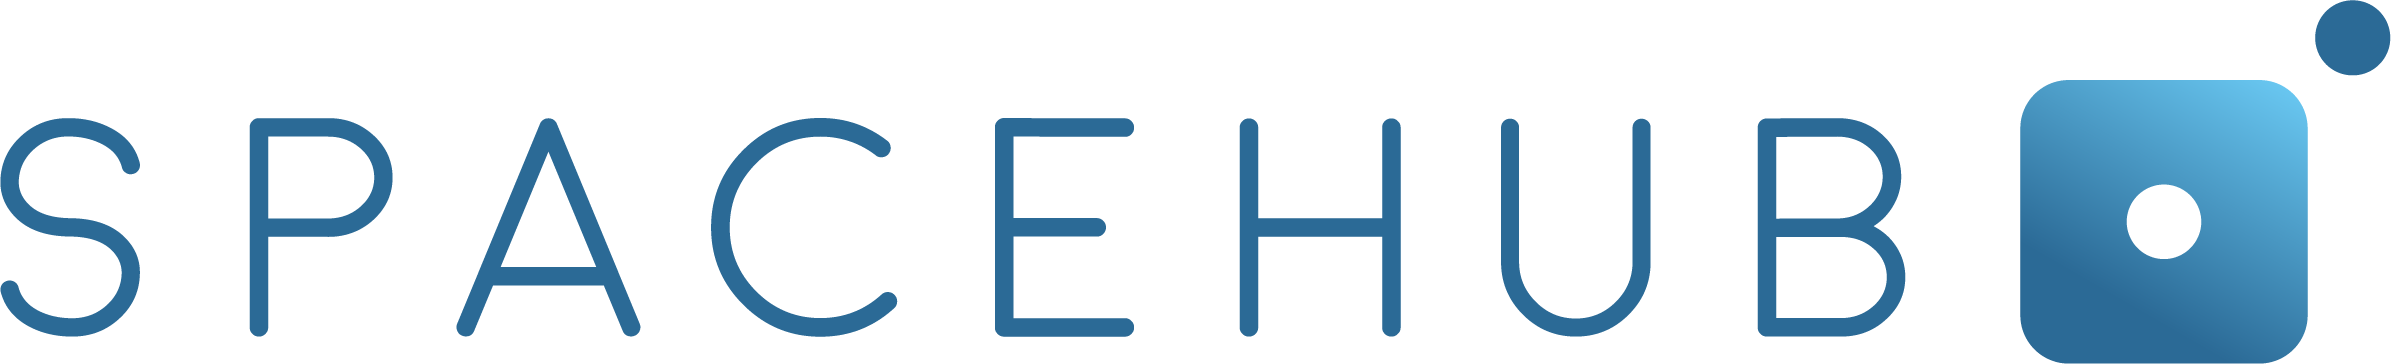 Spacehub-logo